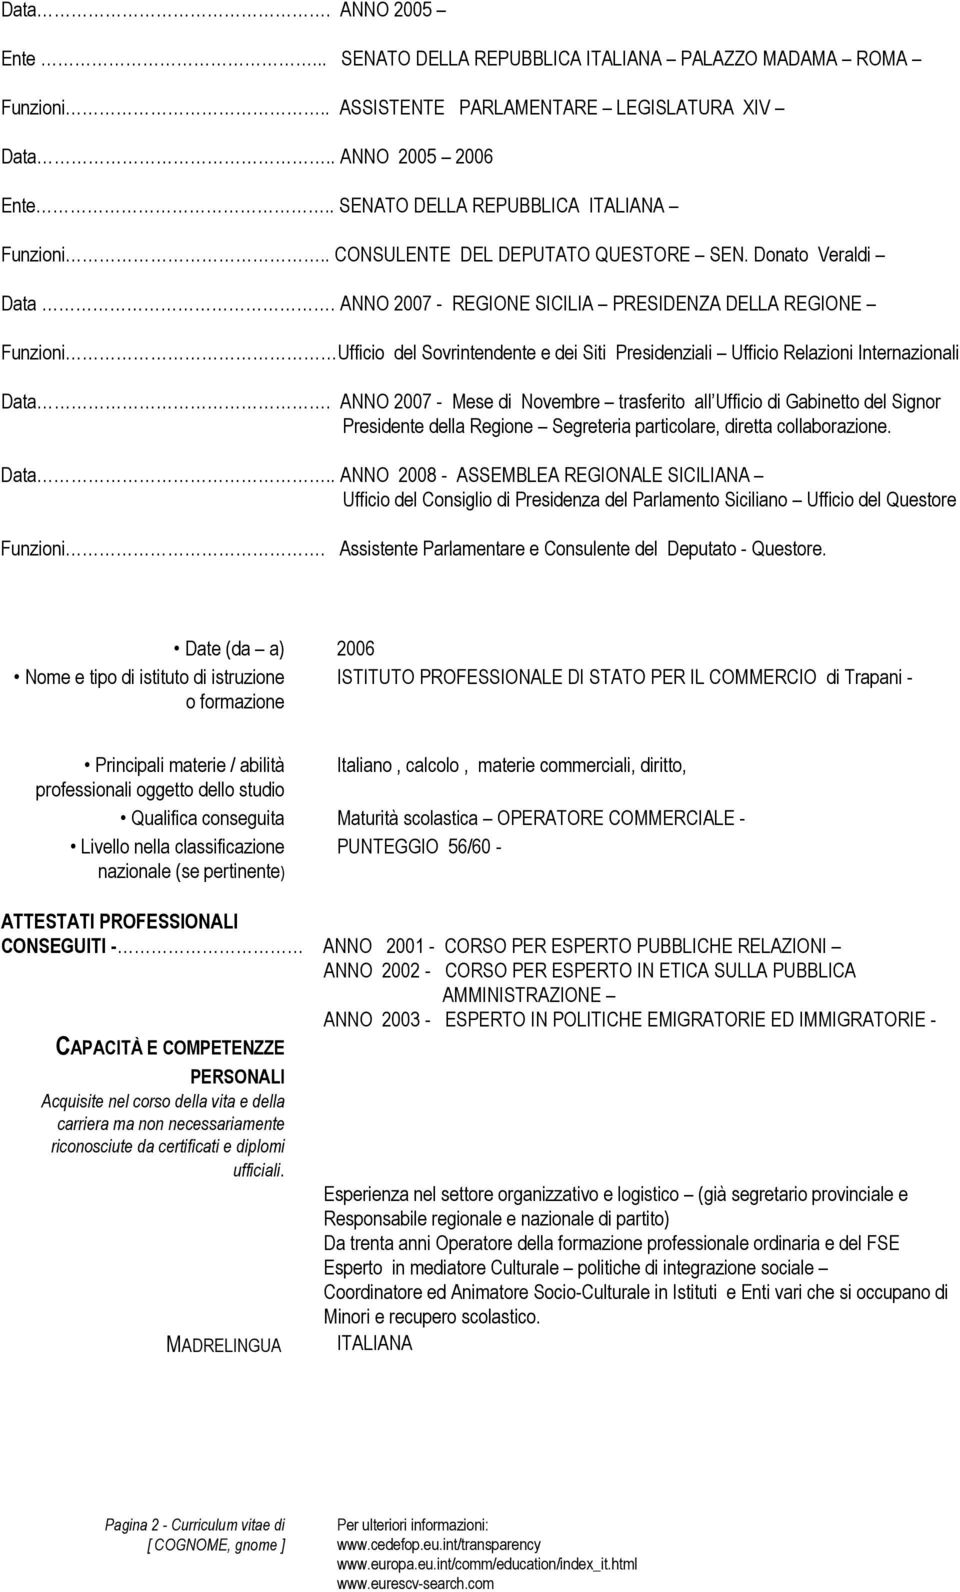 ANNO 2007 - REGIONE SICILIA PRESIDENZA DELLA REGIONE Funzioni Ufficio del Sovrintendente e dei Siti Presidenziali Ufficio Relazioni Internazionali Data.